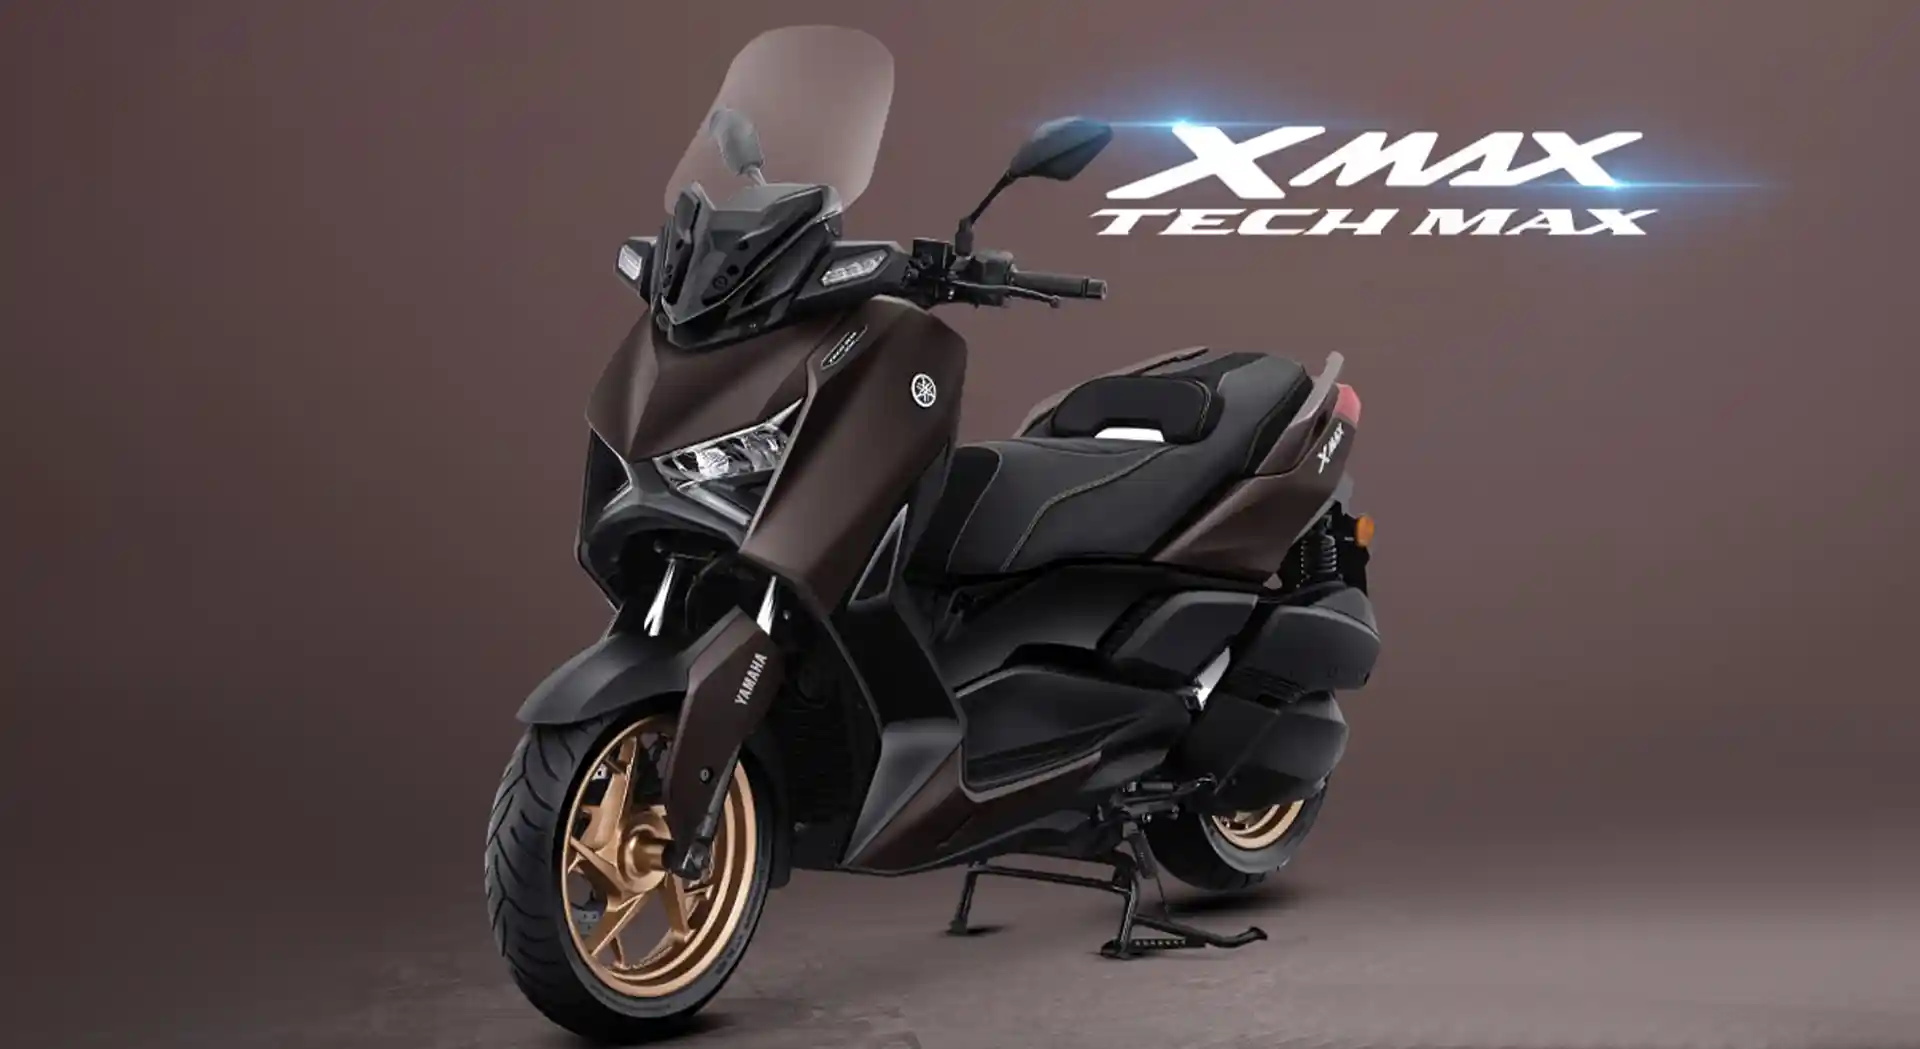 Rp 71 Jutaan, Yamaha Rilis XMAX 250 Tech Max dengan Berbagai Aksesoris